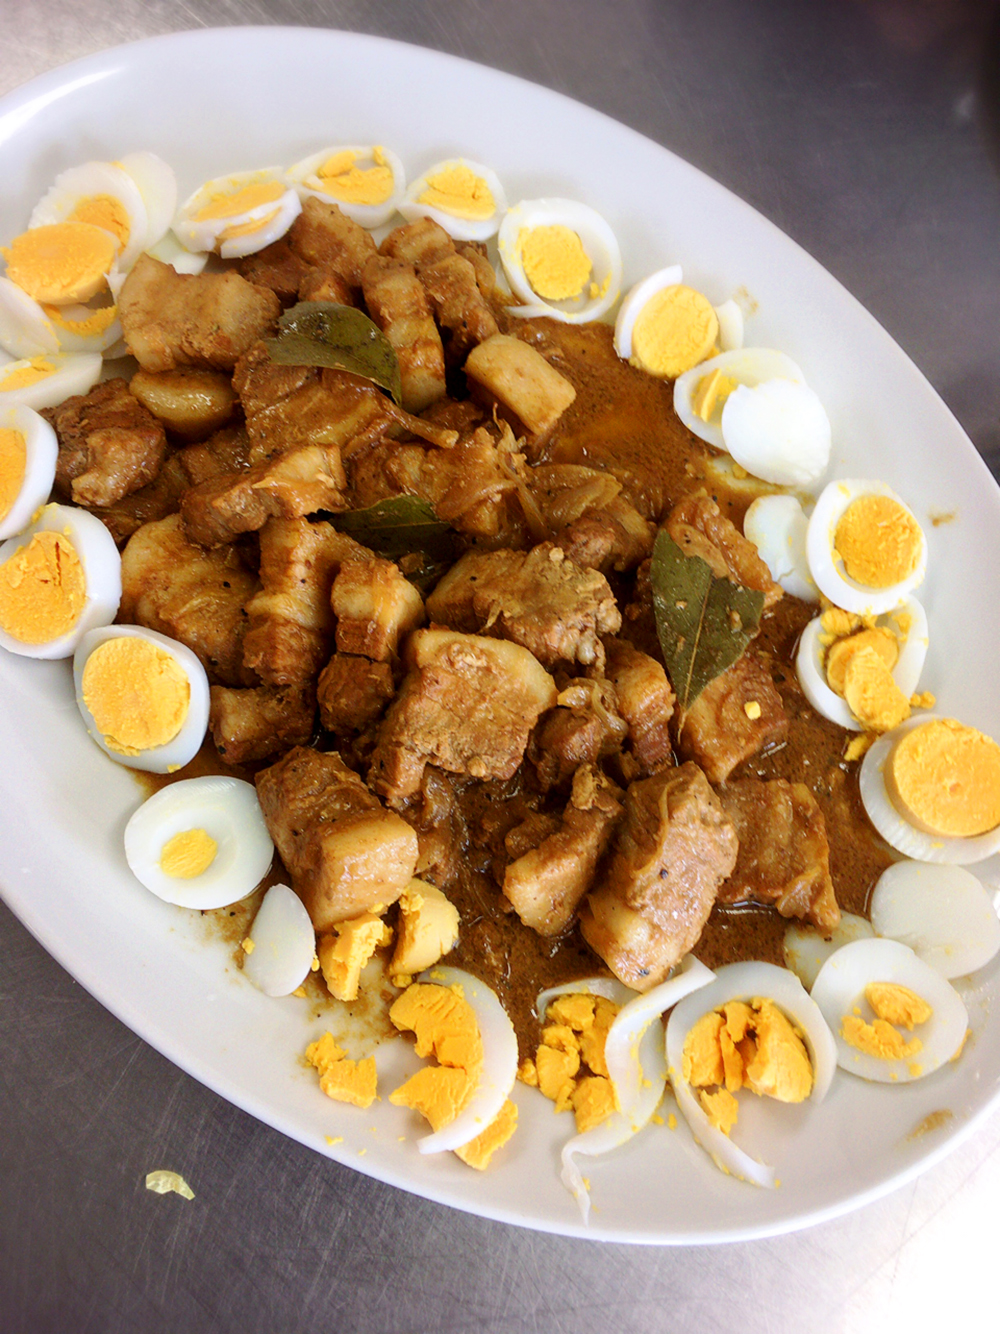 メヌード (フィリピン料理)